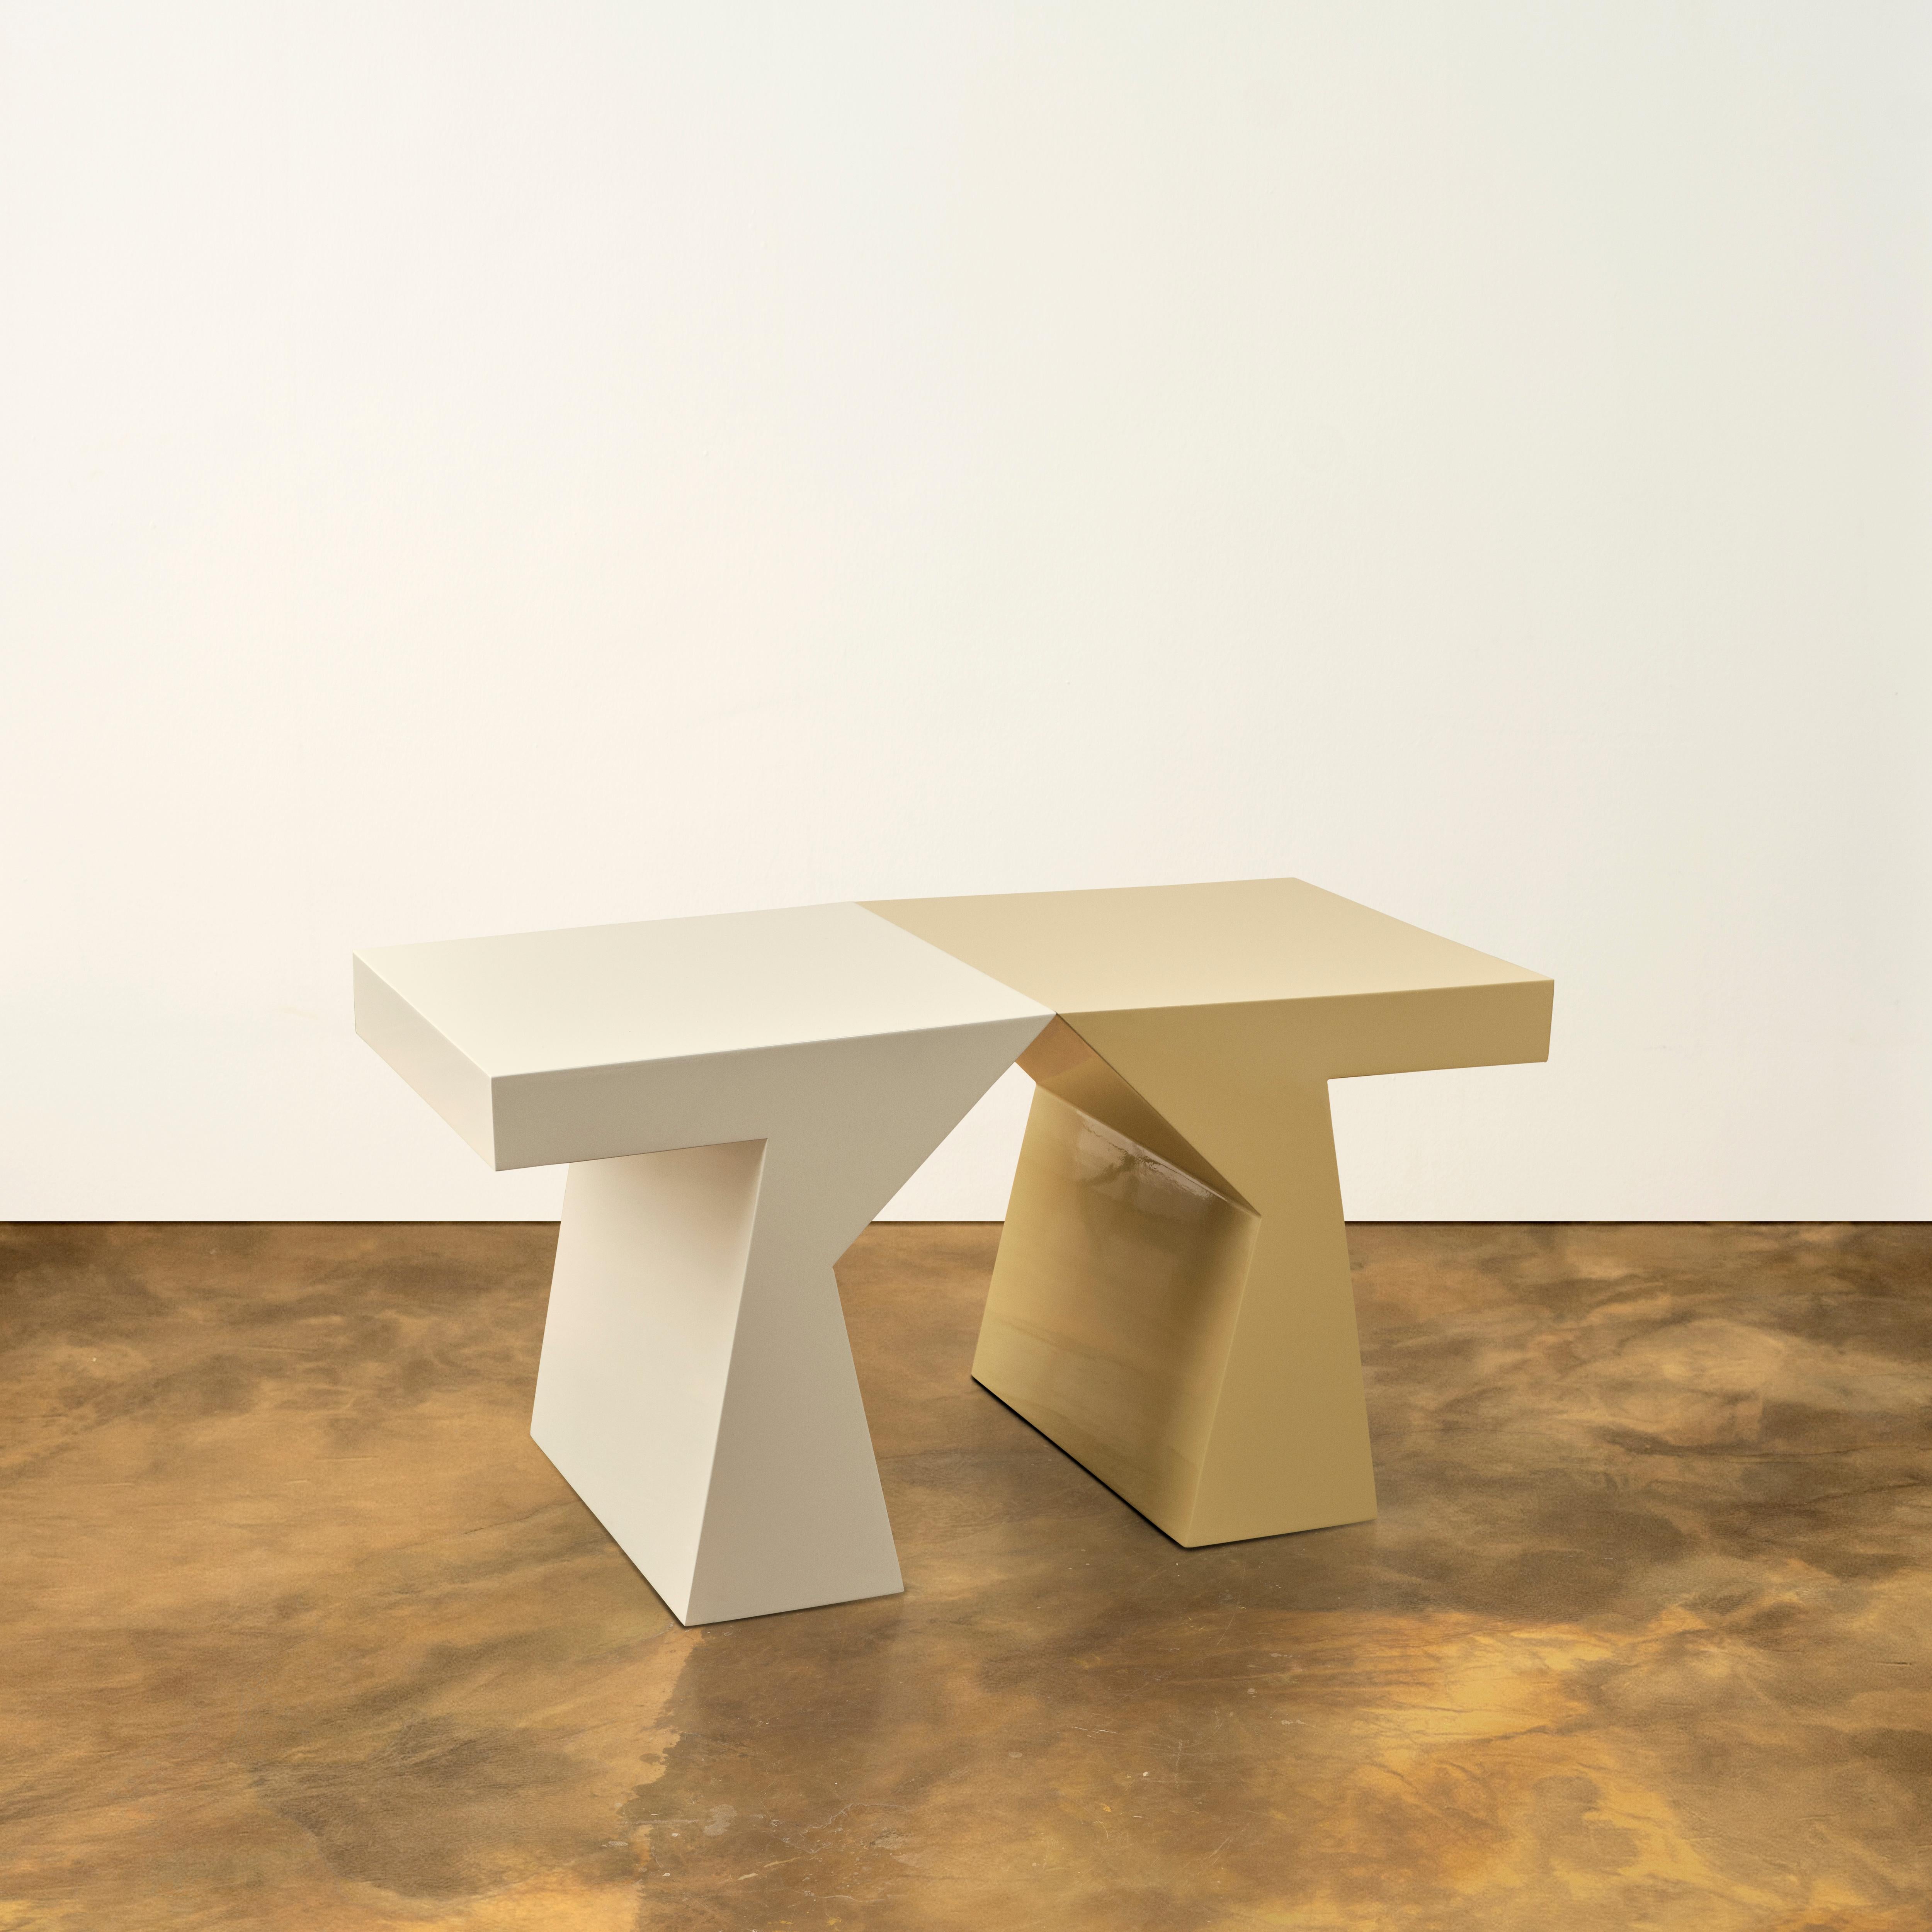 La table basse Columbina fait partie de la Collection Travelling Performers. Elle reprend la forme de la table d'appoint Columbina avec une différence de taille et de matériau. Fabriqué en bois laqué brillant de différentes couleurs, c'est un meuble